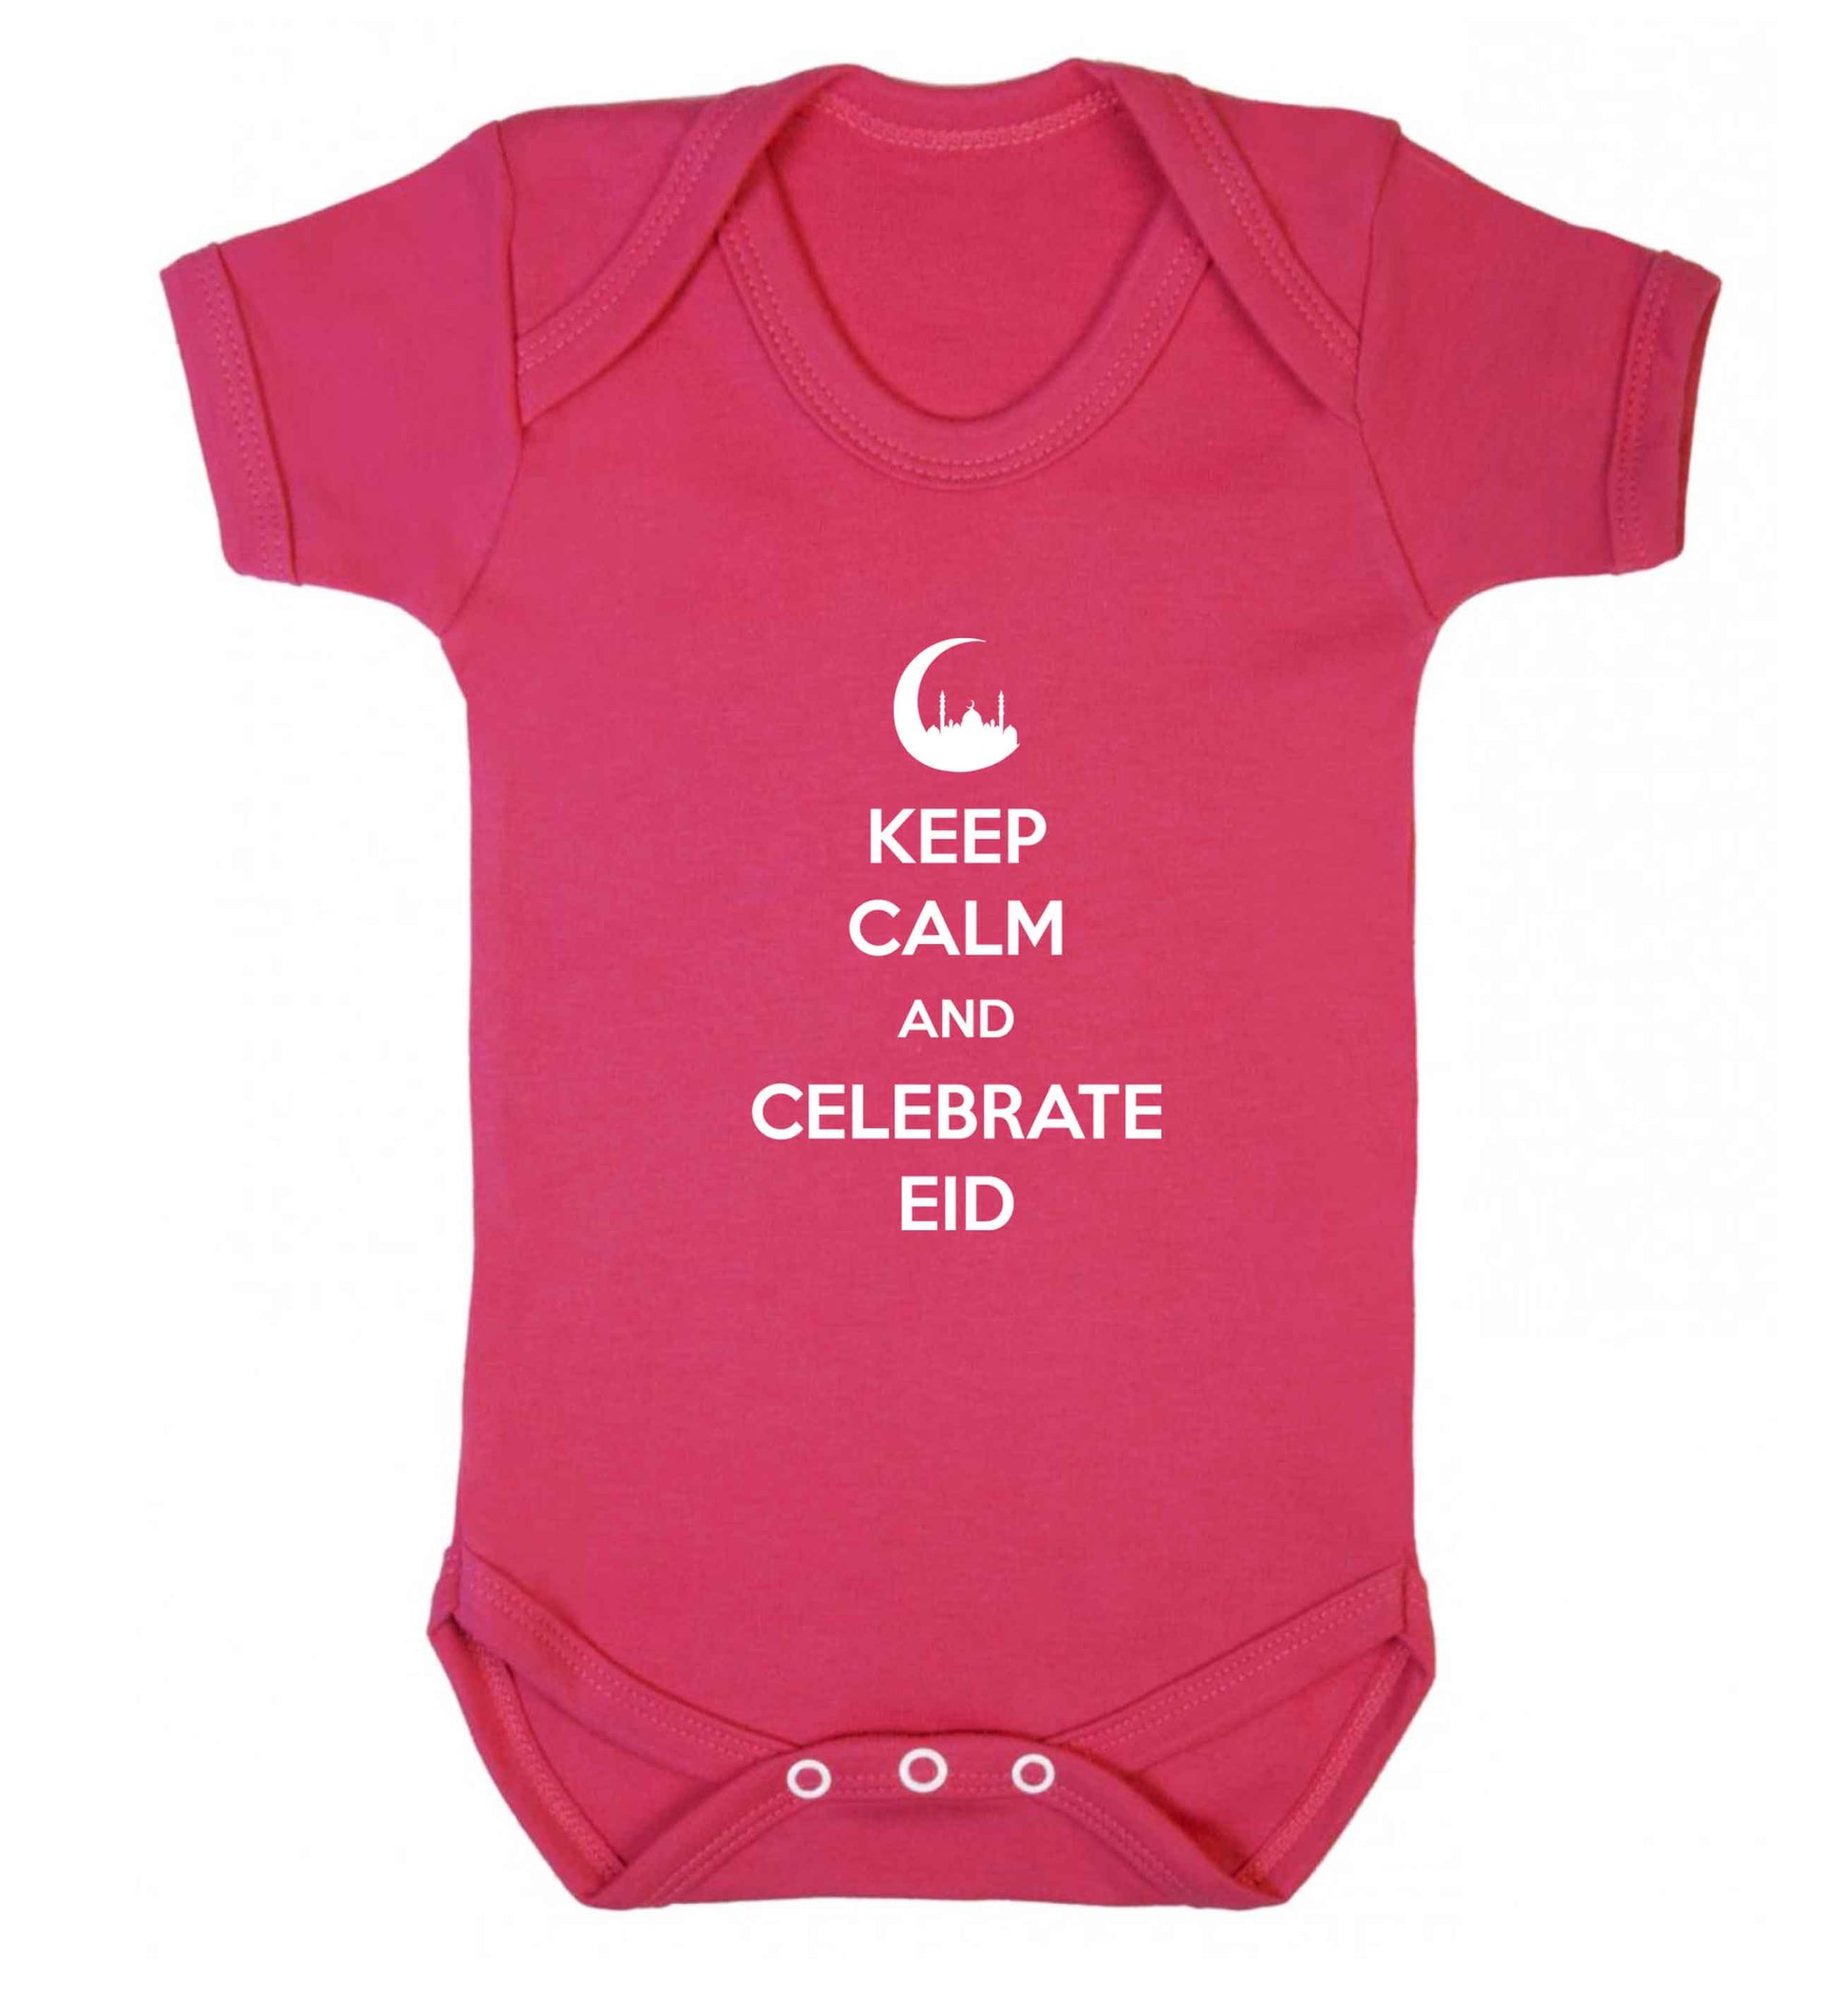 Keep calm and celebrate Eid baby vest dark pink 18-24 months